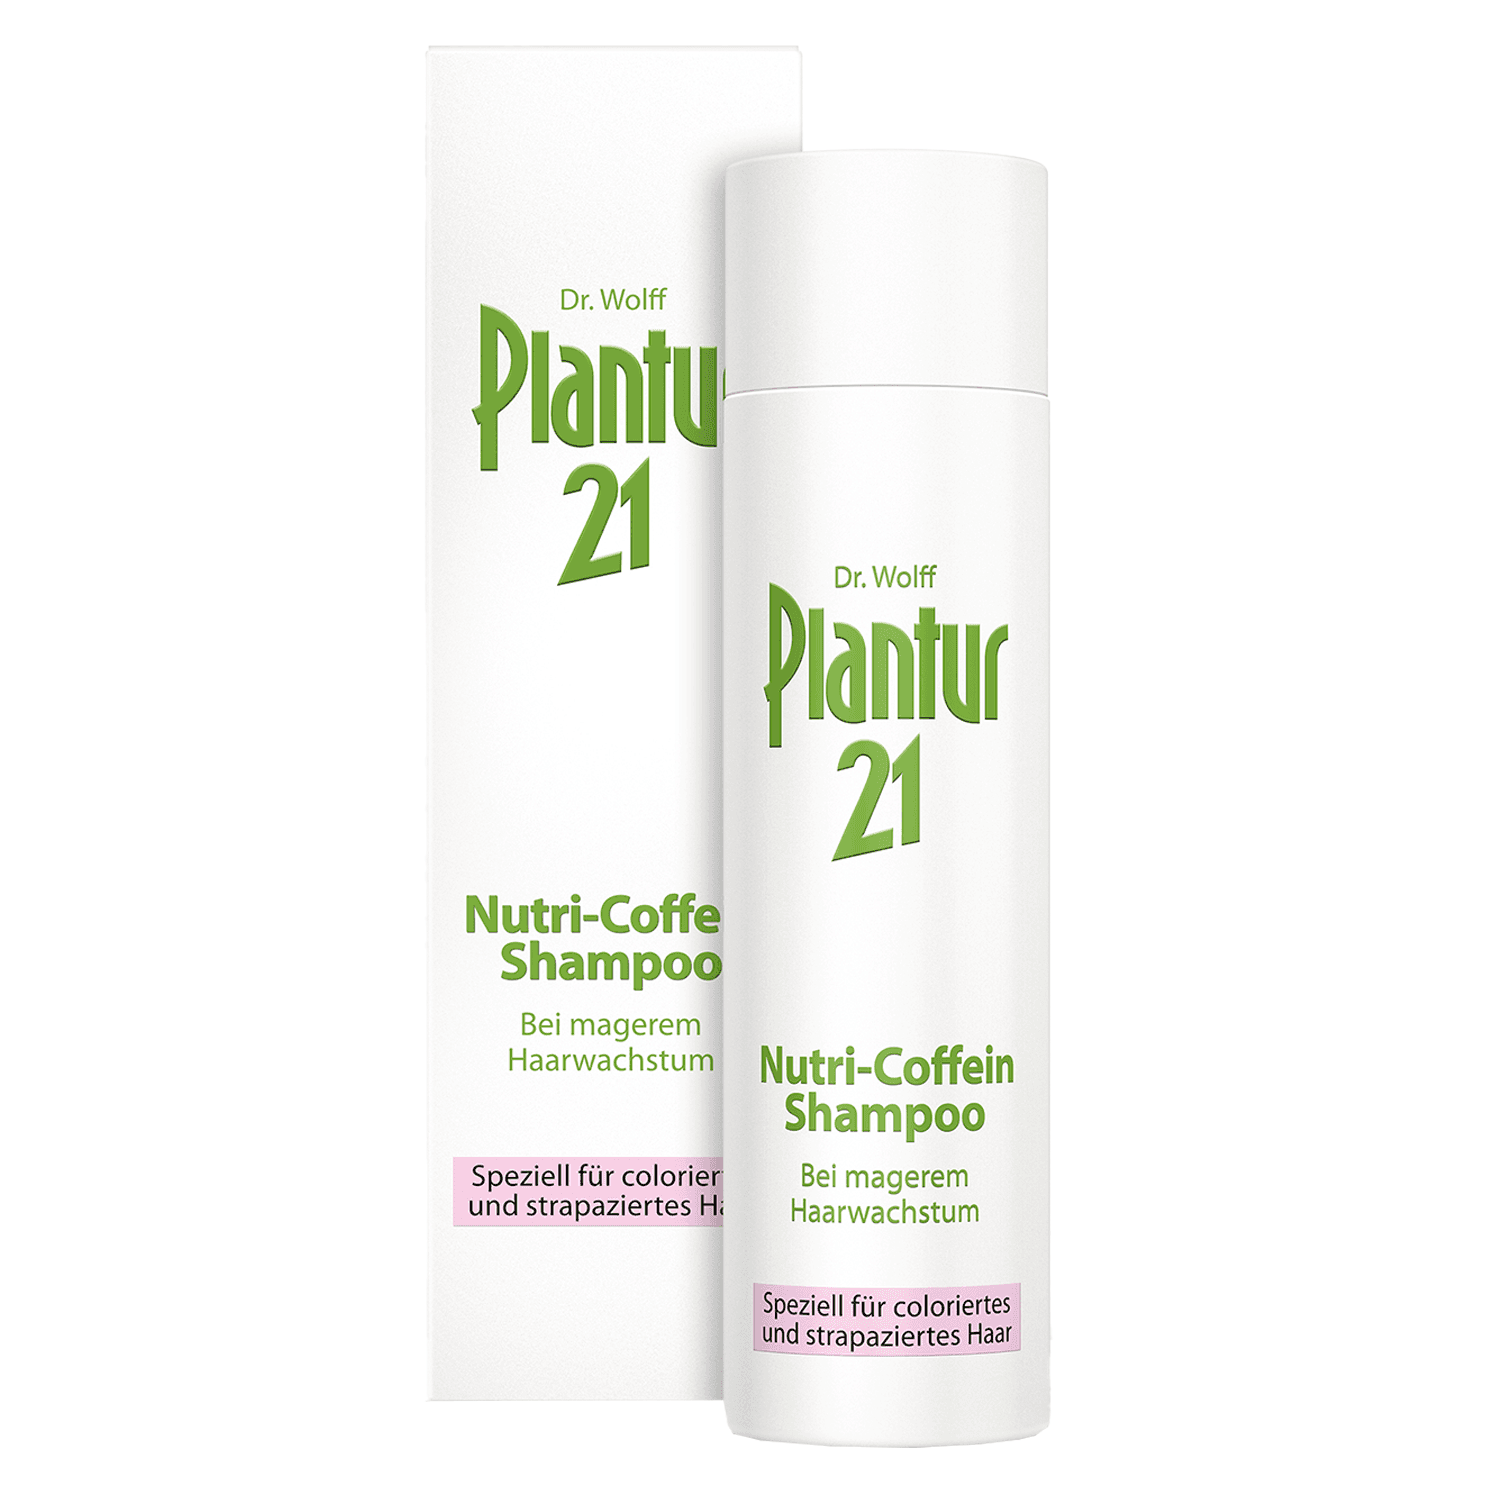 Plantur 21 - Nutri-Caffeine Shampoo